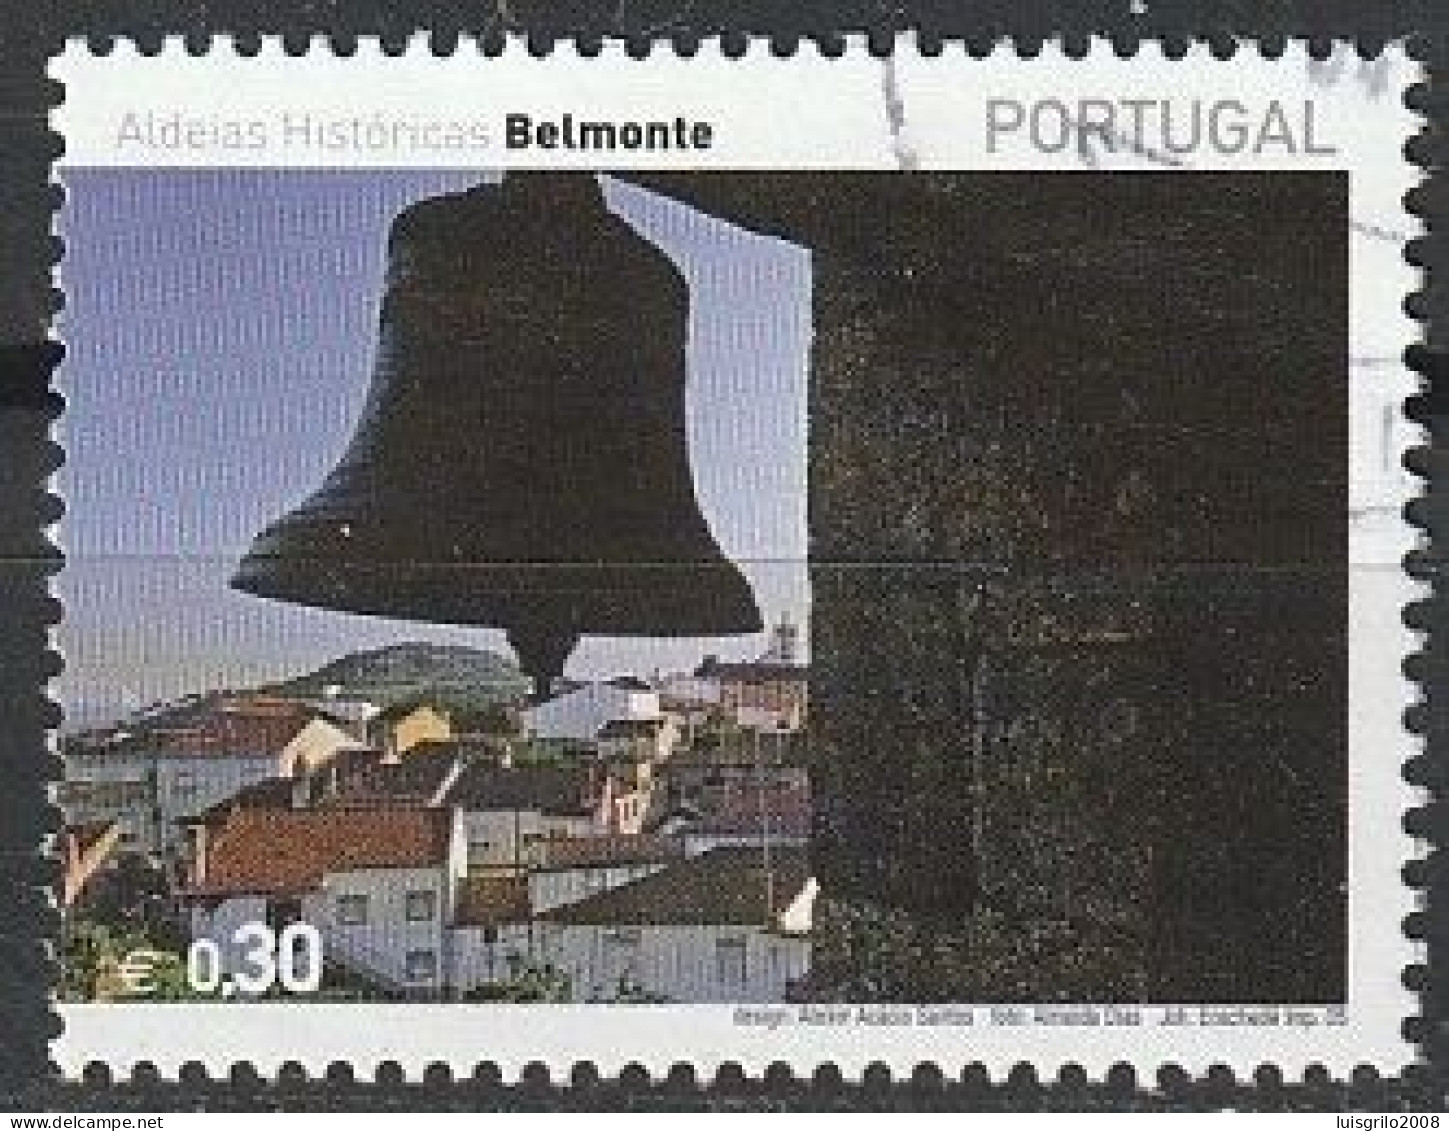 Portugal, 2005 - Aldeias Históricas, €0,30 -|- Mundifil - 3220 - Oblitérés